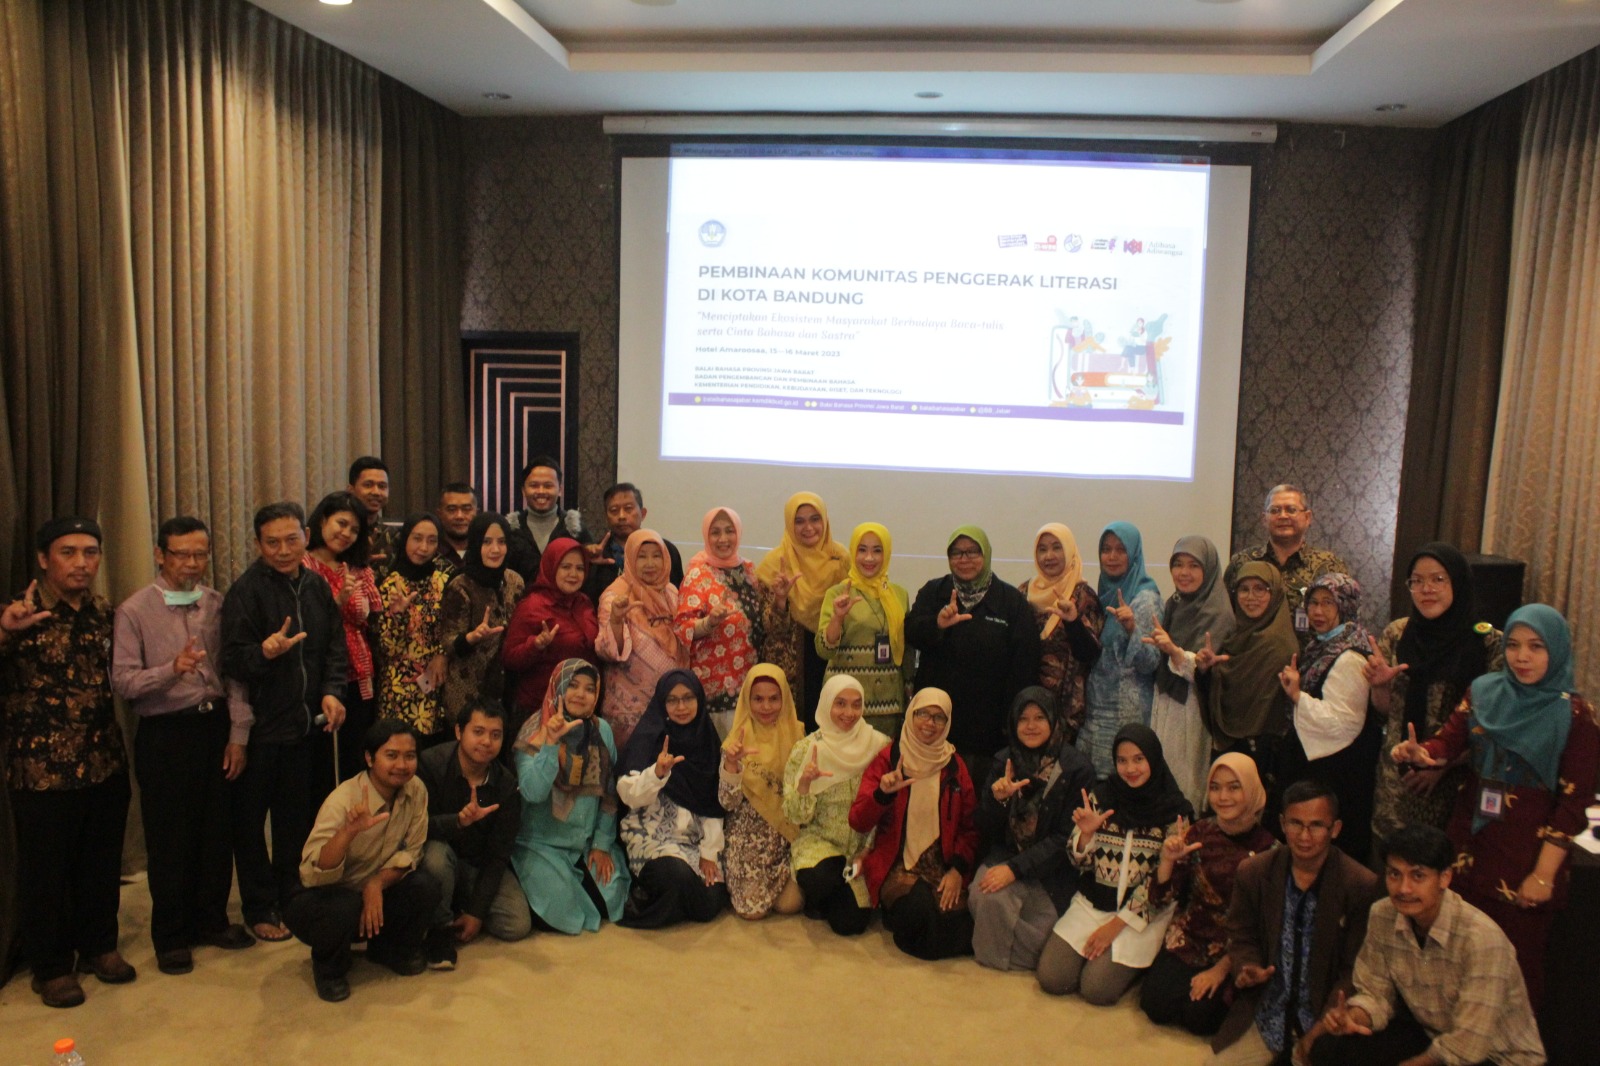 Pembinaan Komunitas Penggerak Literasi di Kota Bandung